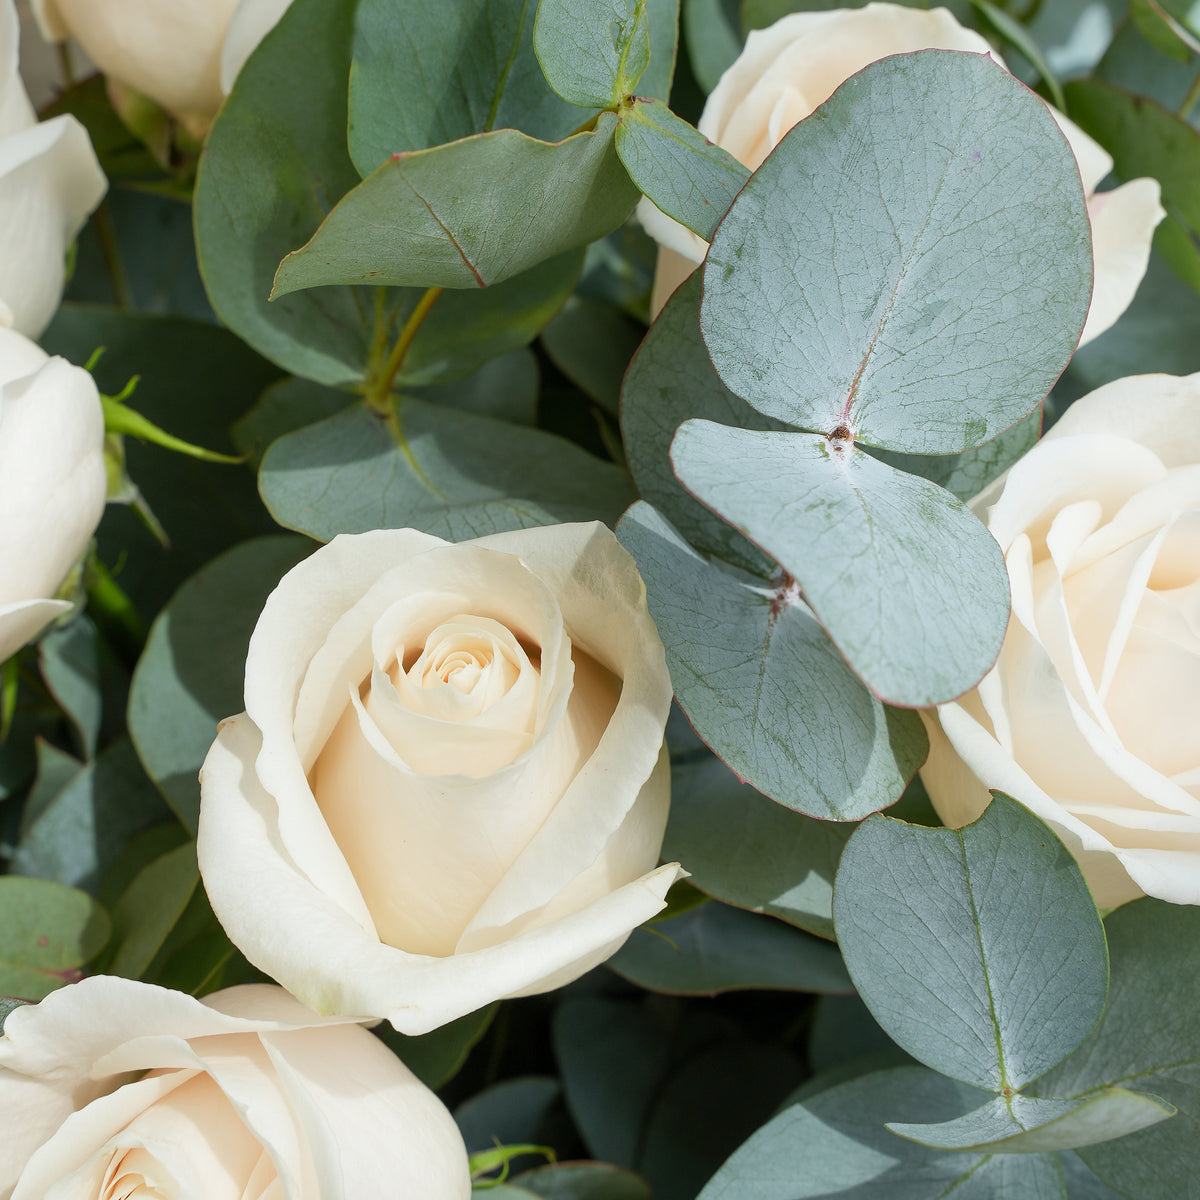 25 White Roses